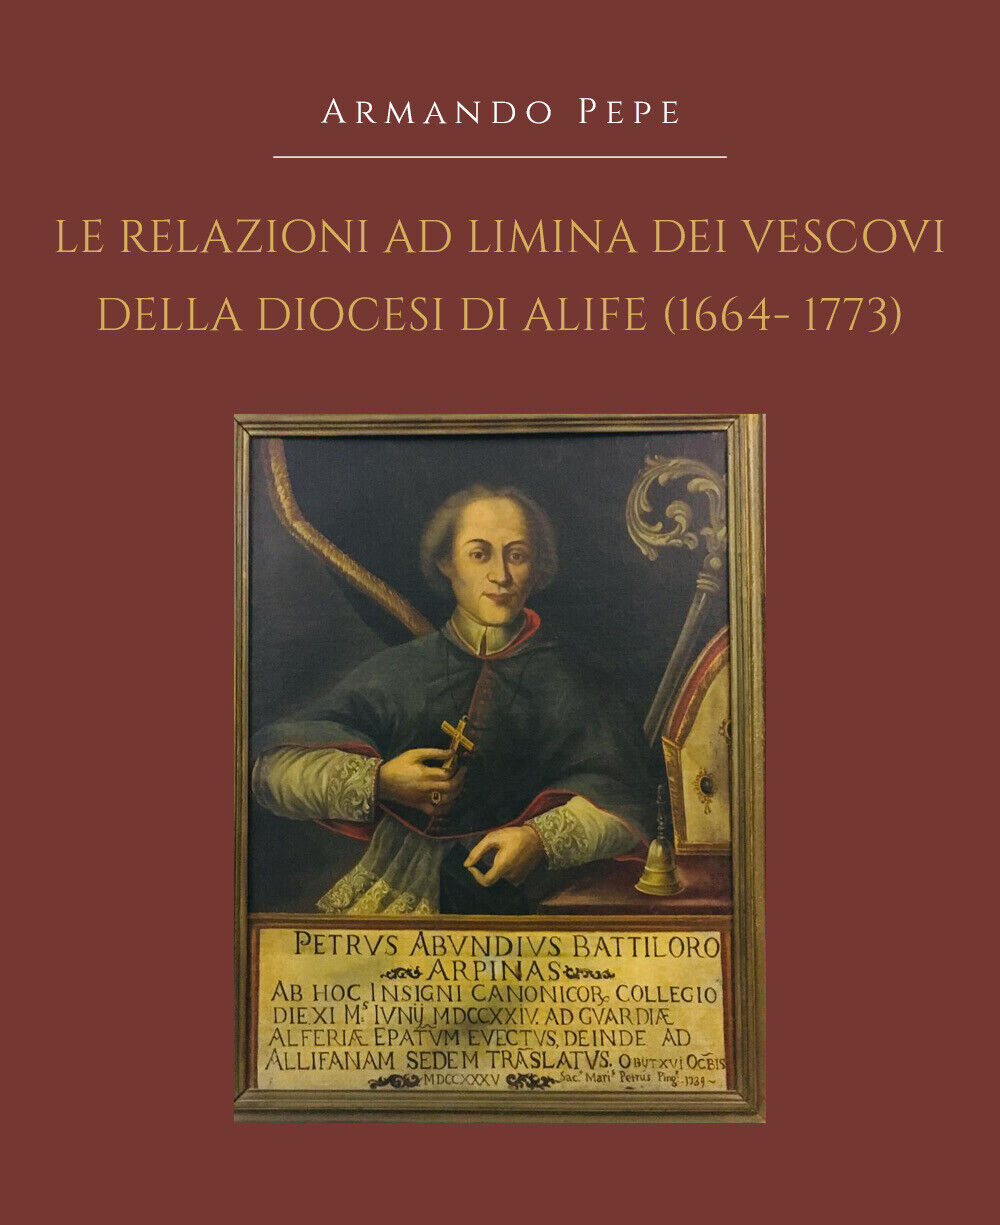 Le relazioni ad limina dei vescovi della diocesi di Alife (1664- 1773), 2019